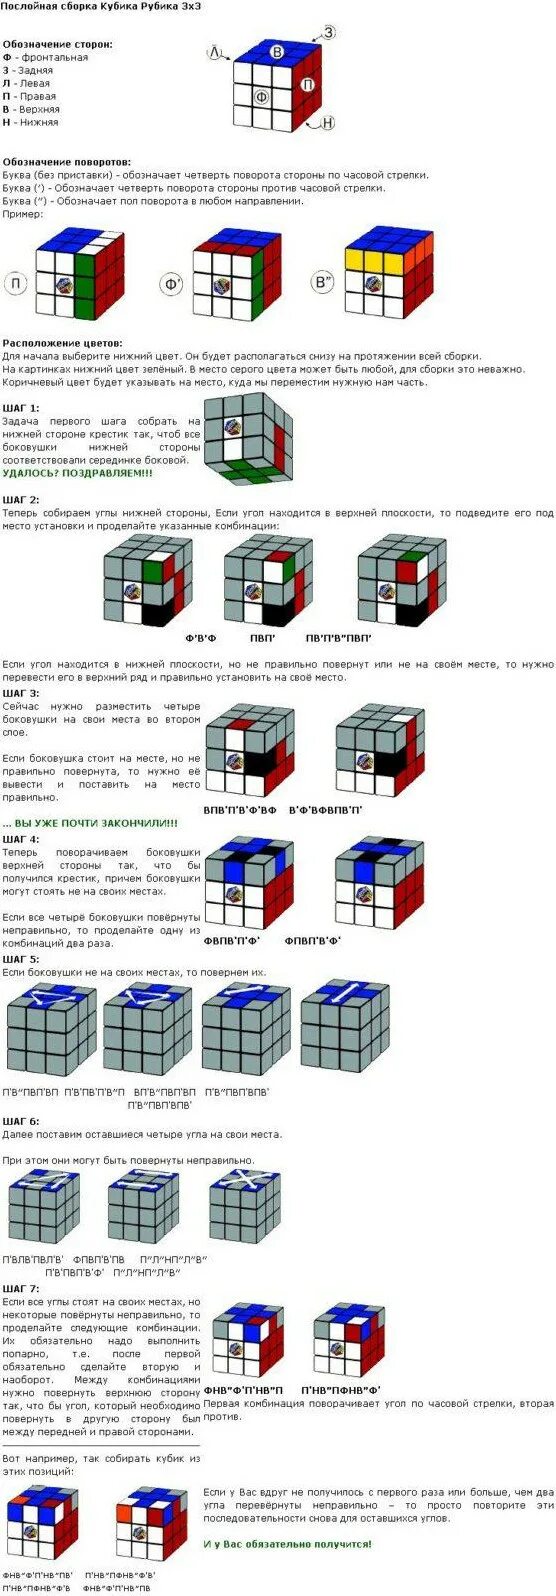 Инструкция кубика рубика 3х3. Схема сборки кубика Рубика 3 на 3. Схема сбора кубика Рубика 3х3. Схема кубика Рубика 3 на 3. Схема сборки кубика Рубика 3х3 первый слой.